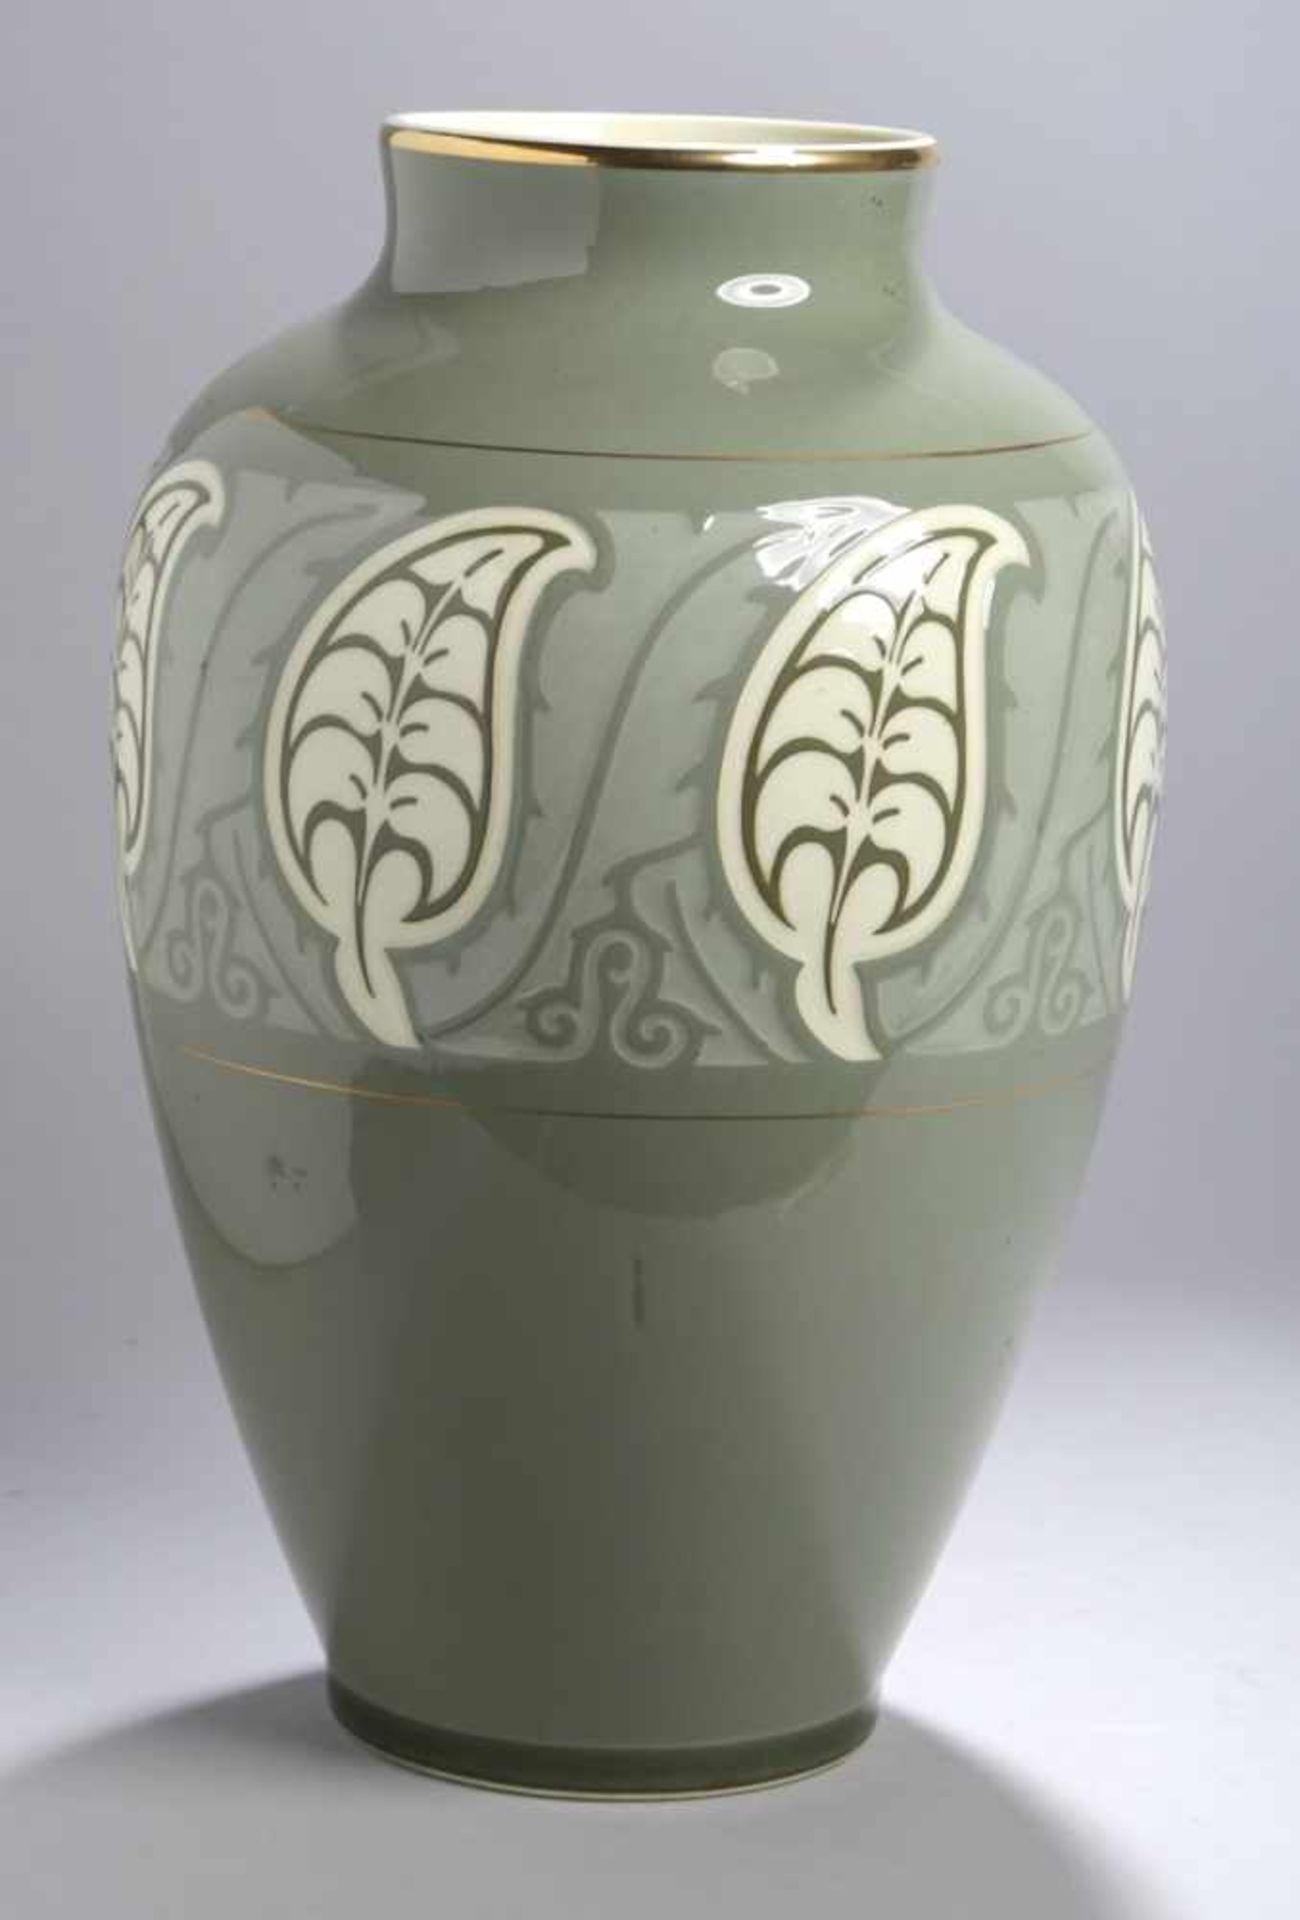 Jugendstil Keramik-Ziervase, Villeroy & Boch, Dresden, runder Stand, hoher, sich bauchig